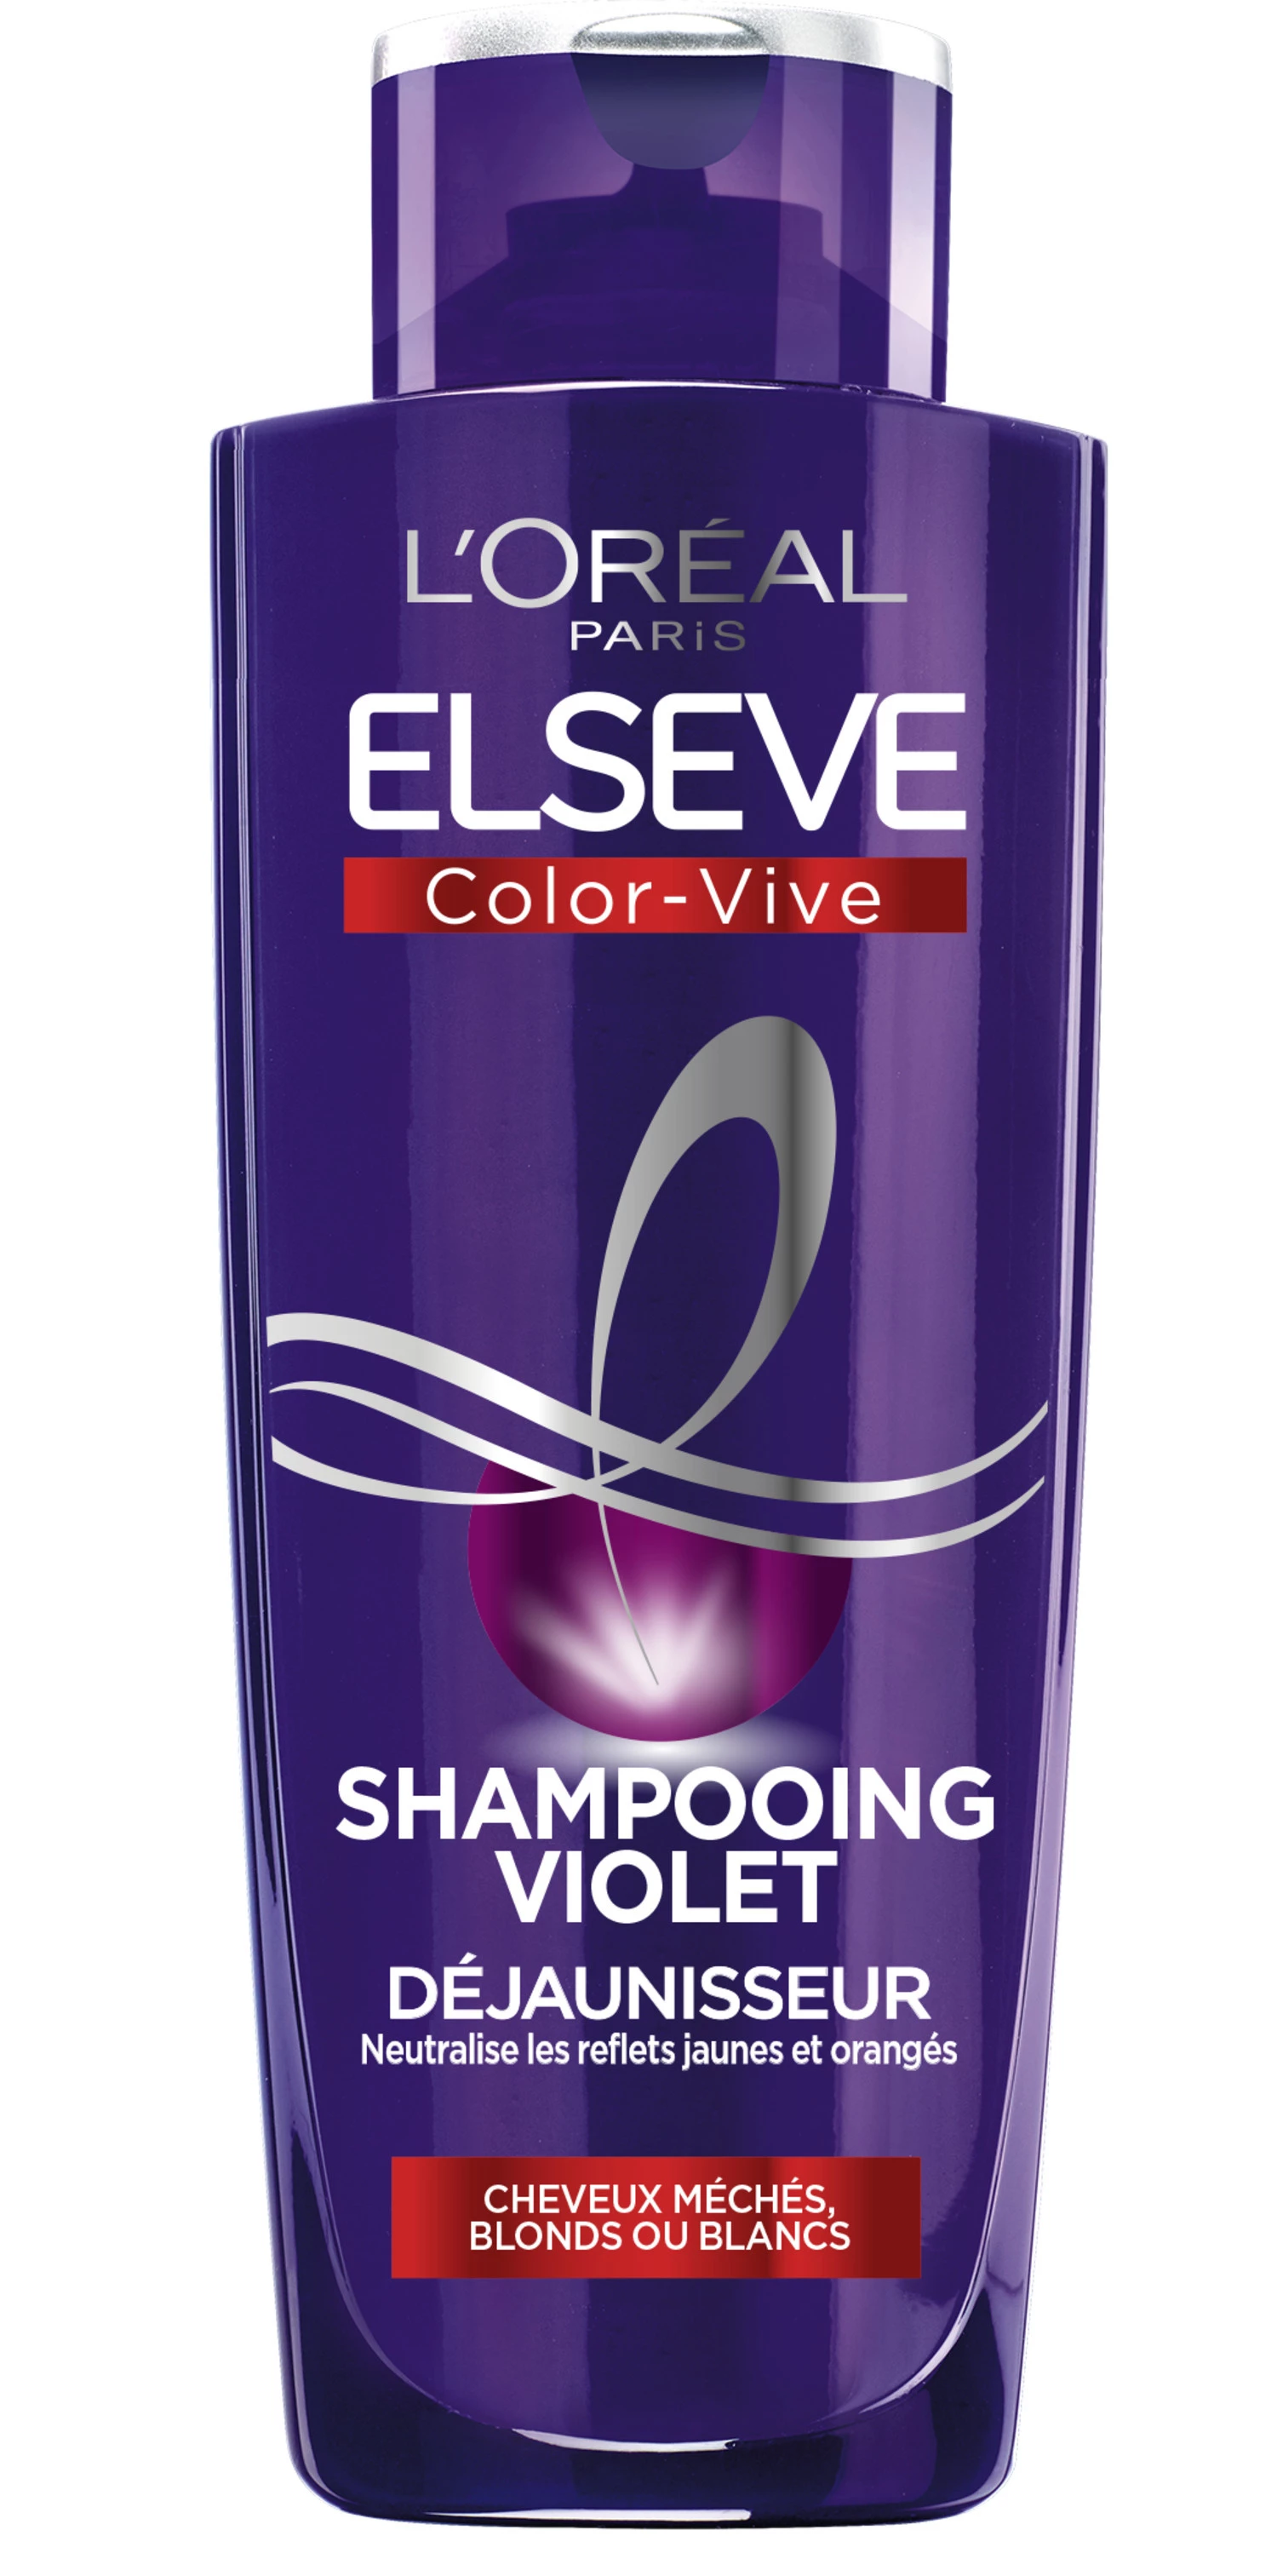 Shampoo violeta déjaunisseur 200ml -  L'ORÉAL